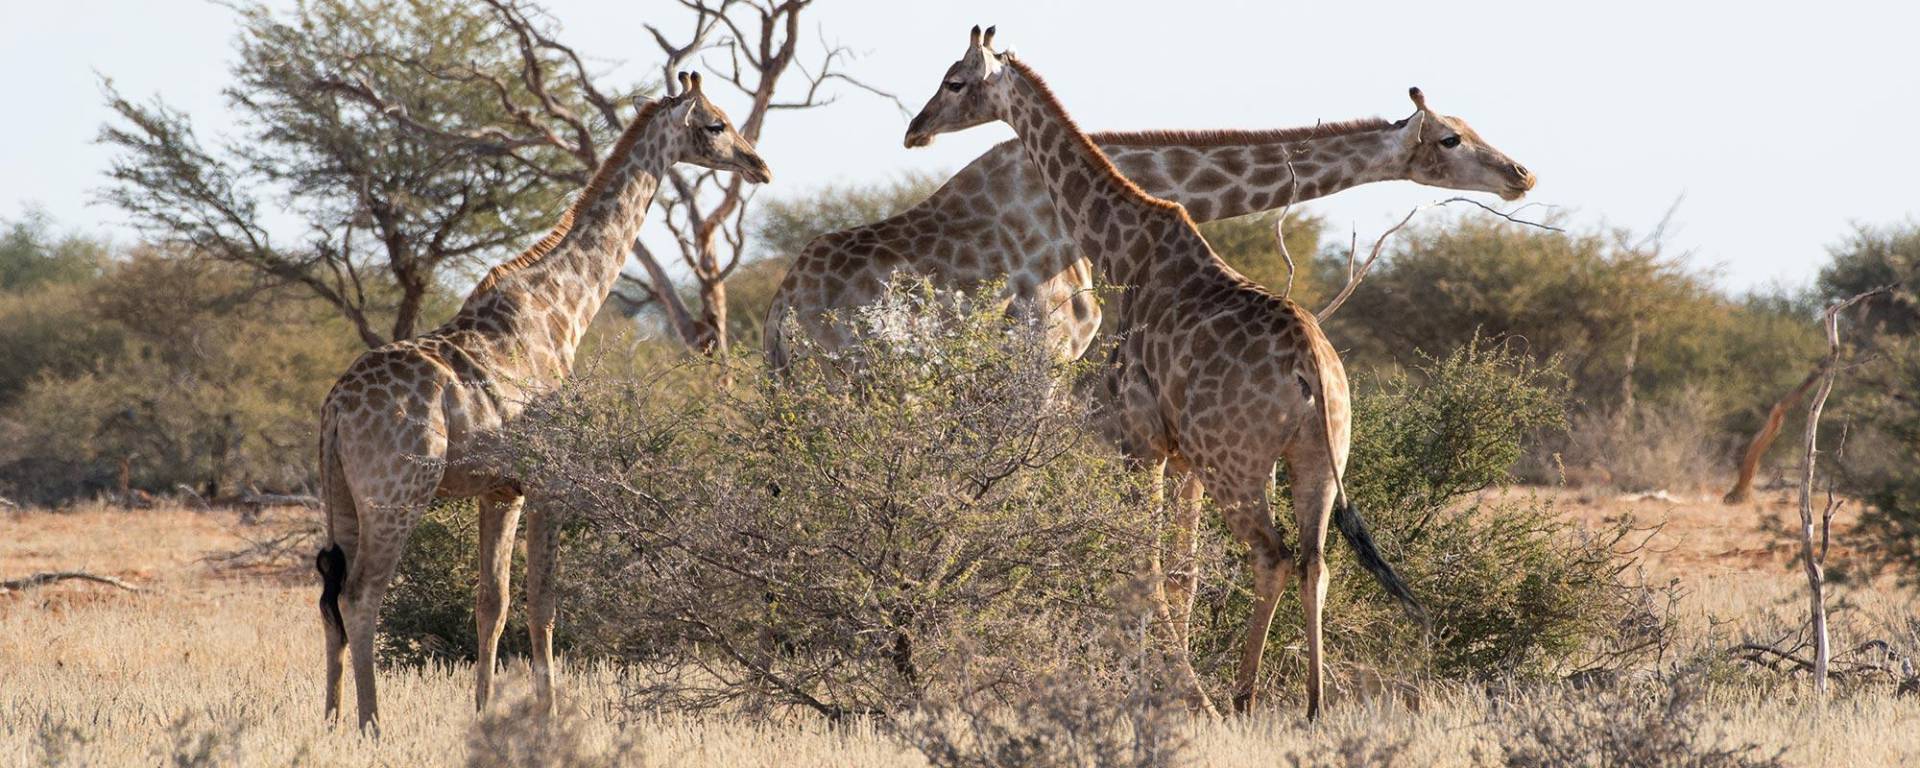 Giraffes at Kuzikus Wildlife Reserve